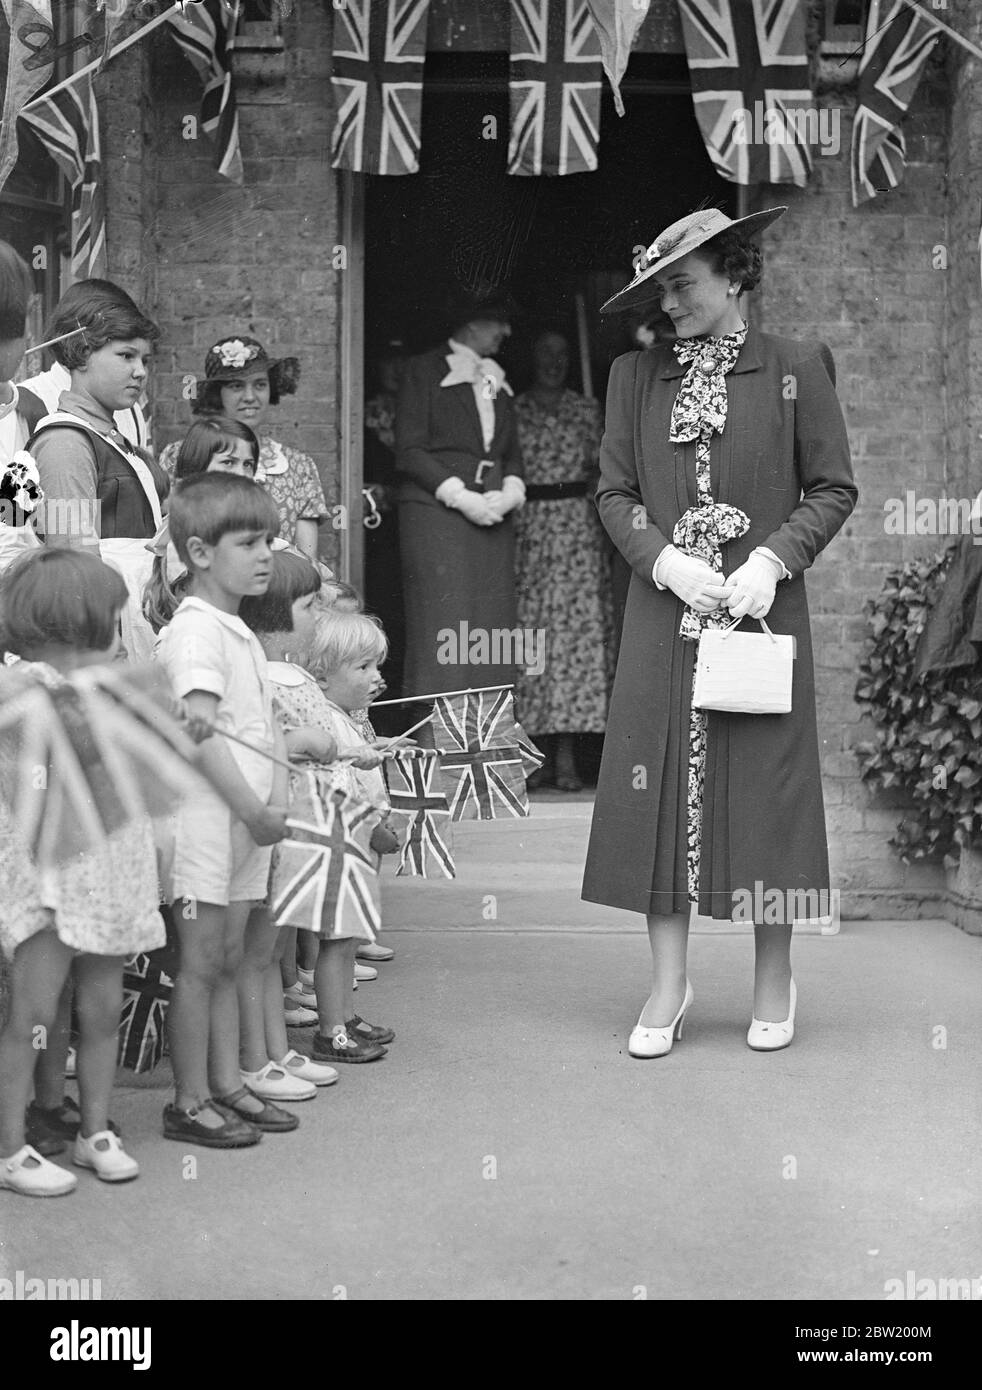 La duchesse de Gloucester a présidé les célébrations de la Journée du fondateur des maisons du Dr Bernardo à la Maison du village des filles, à Barkingside, dans l'Essex, où elle a été accueillie par des enfants avec Union Jacks. 26 juin 1937 Banque D'Images